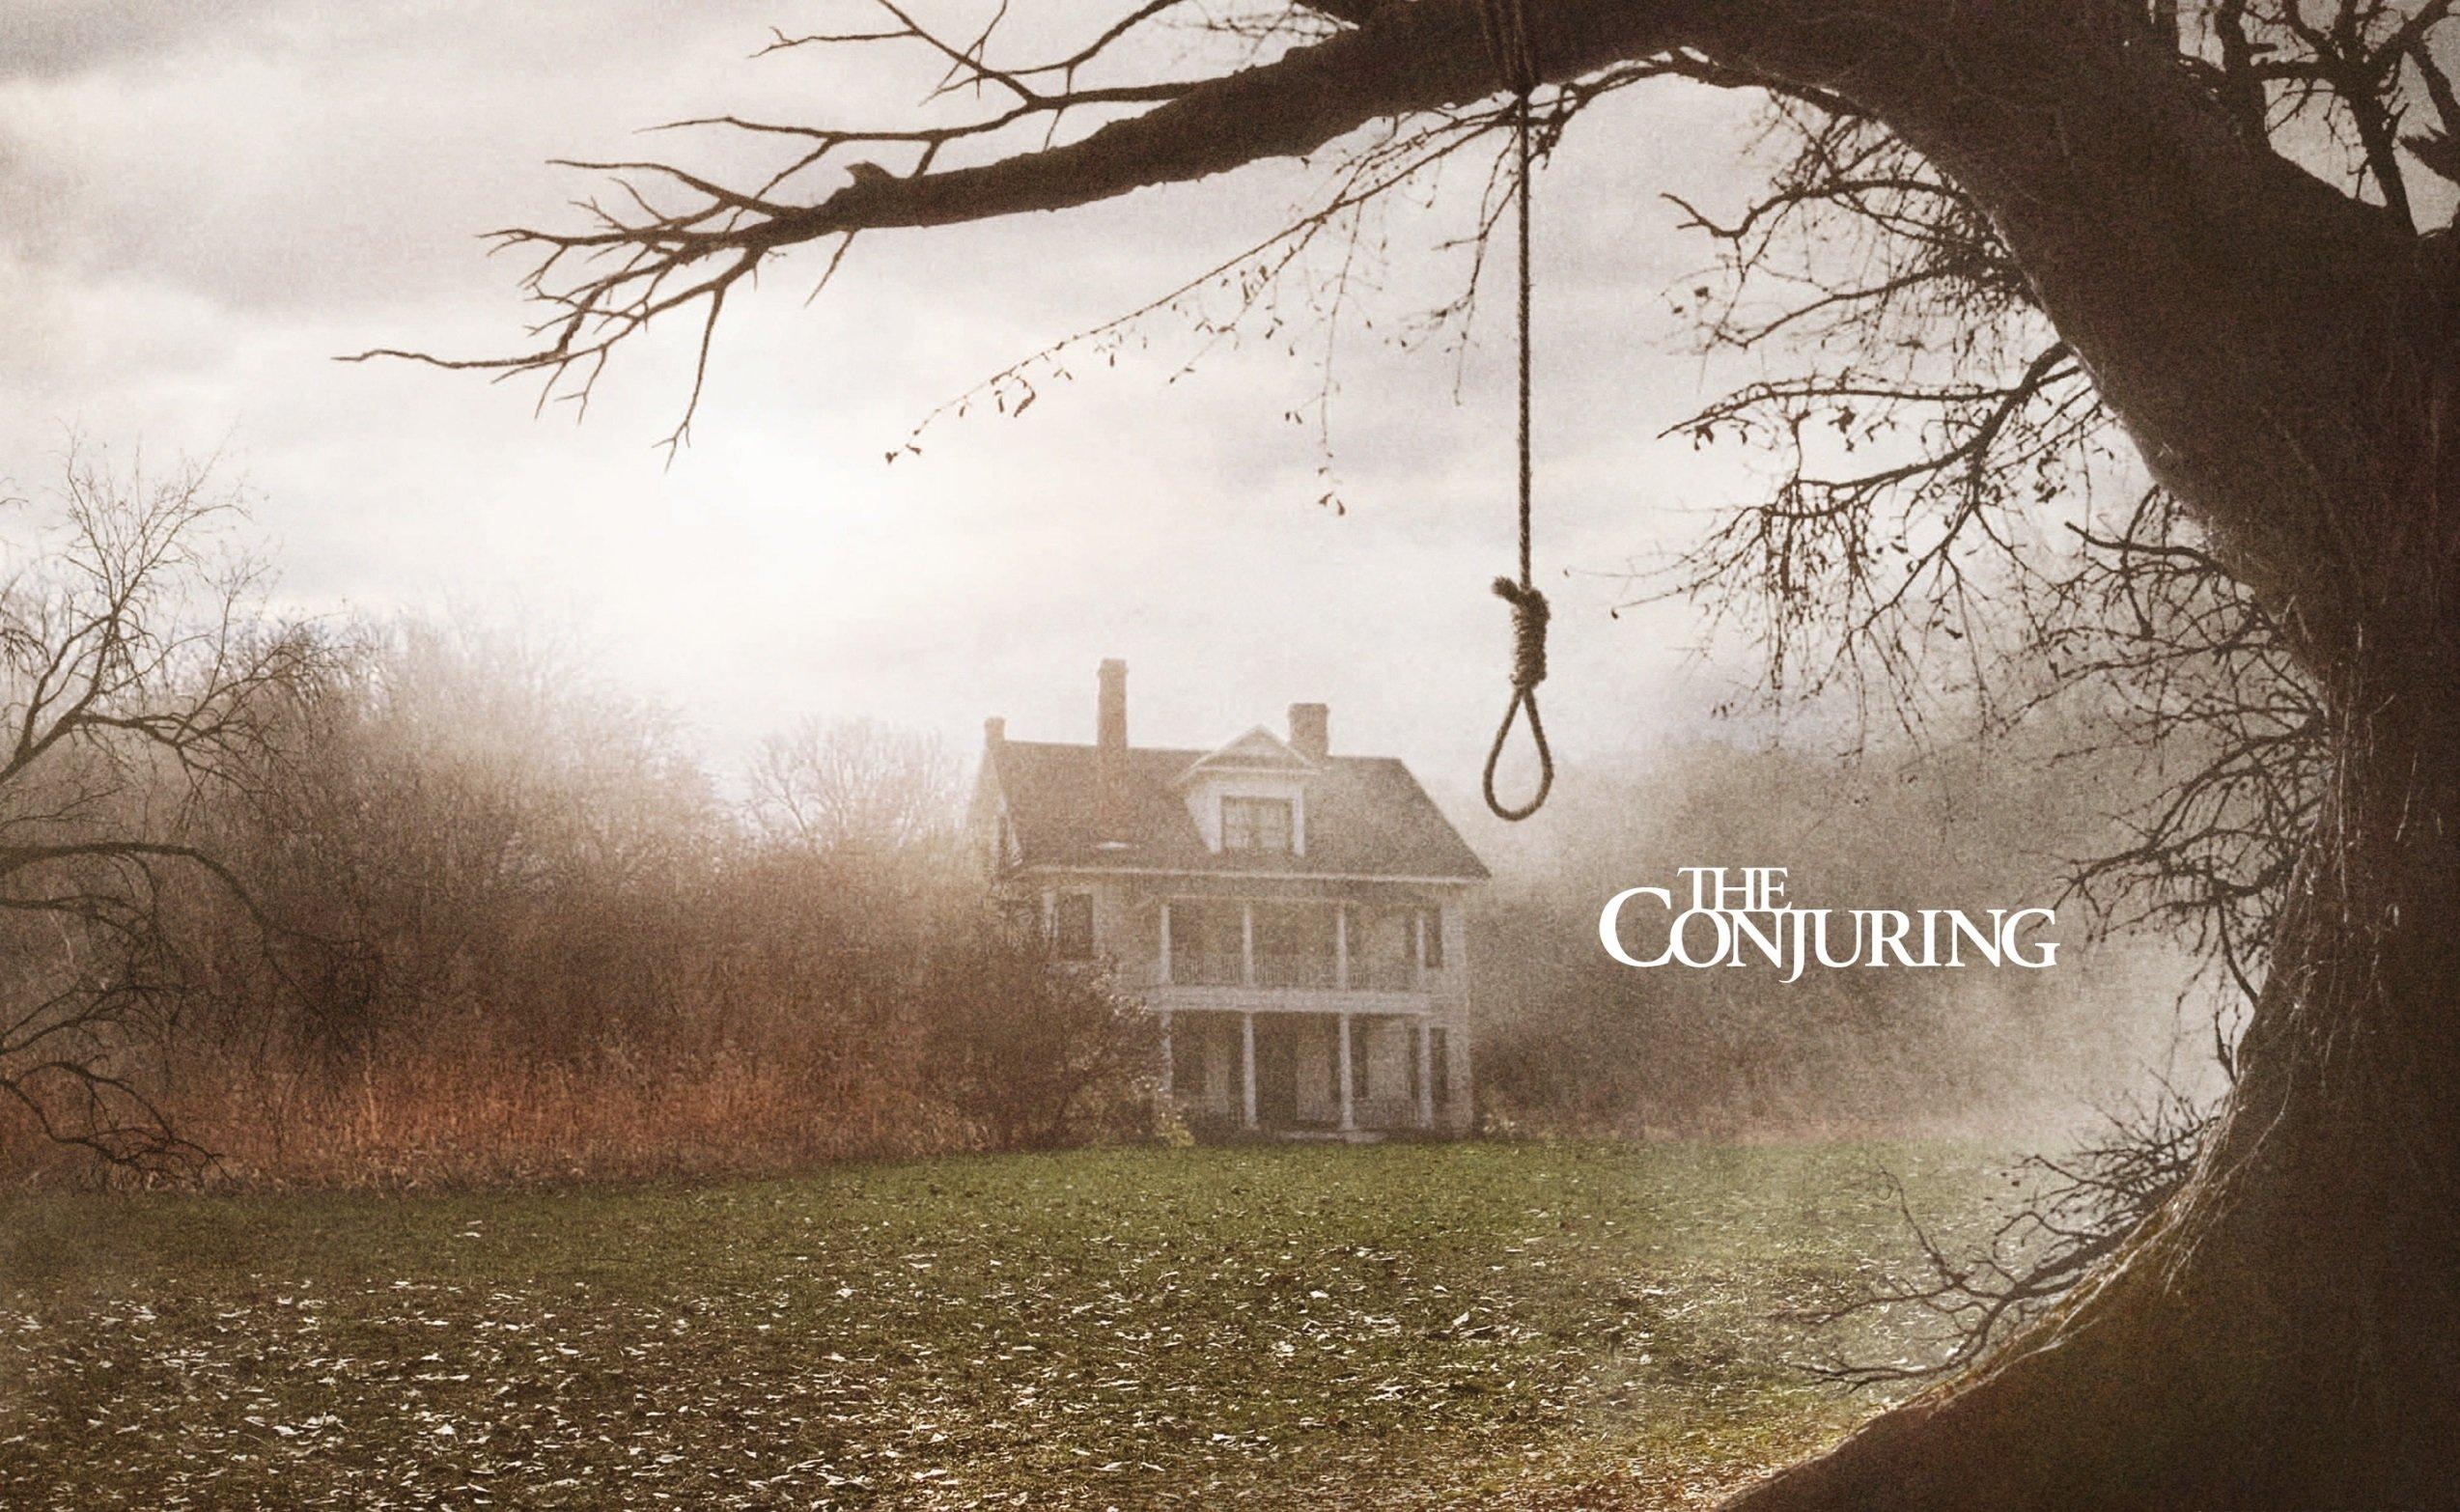 The Conjuring - The Conjuring là bộ phim kinh dị được đánh giá cao trong lịch sử điện ảnh, hứa hẹn mang đến cho bạn những cảm xúc khó quên và đầy ám ảnh.